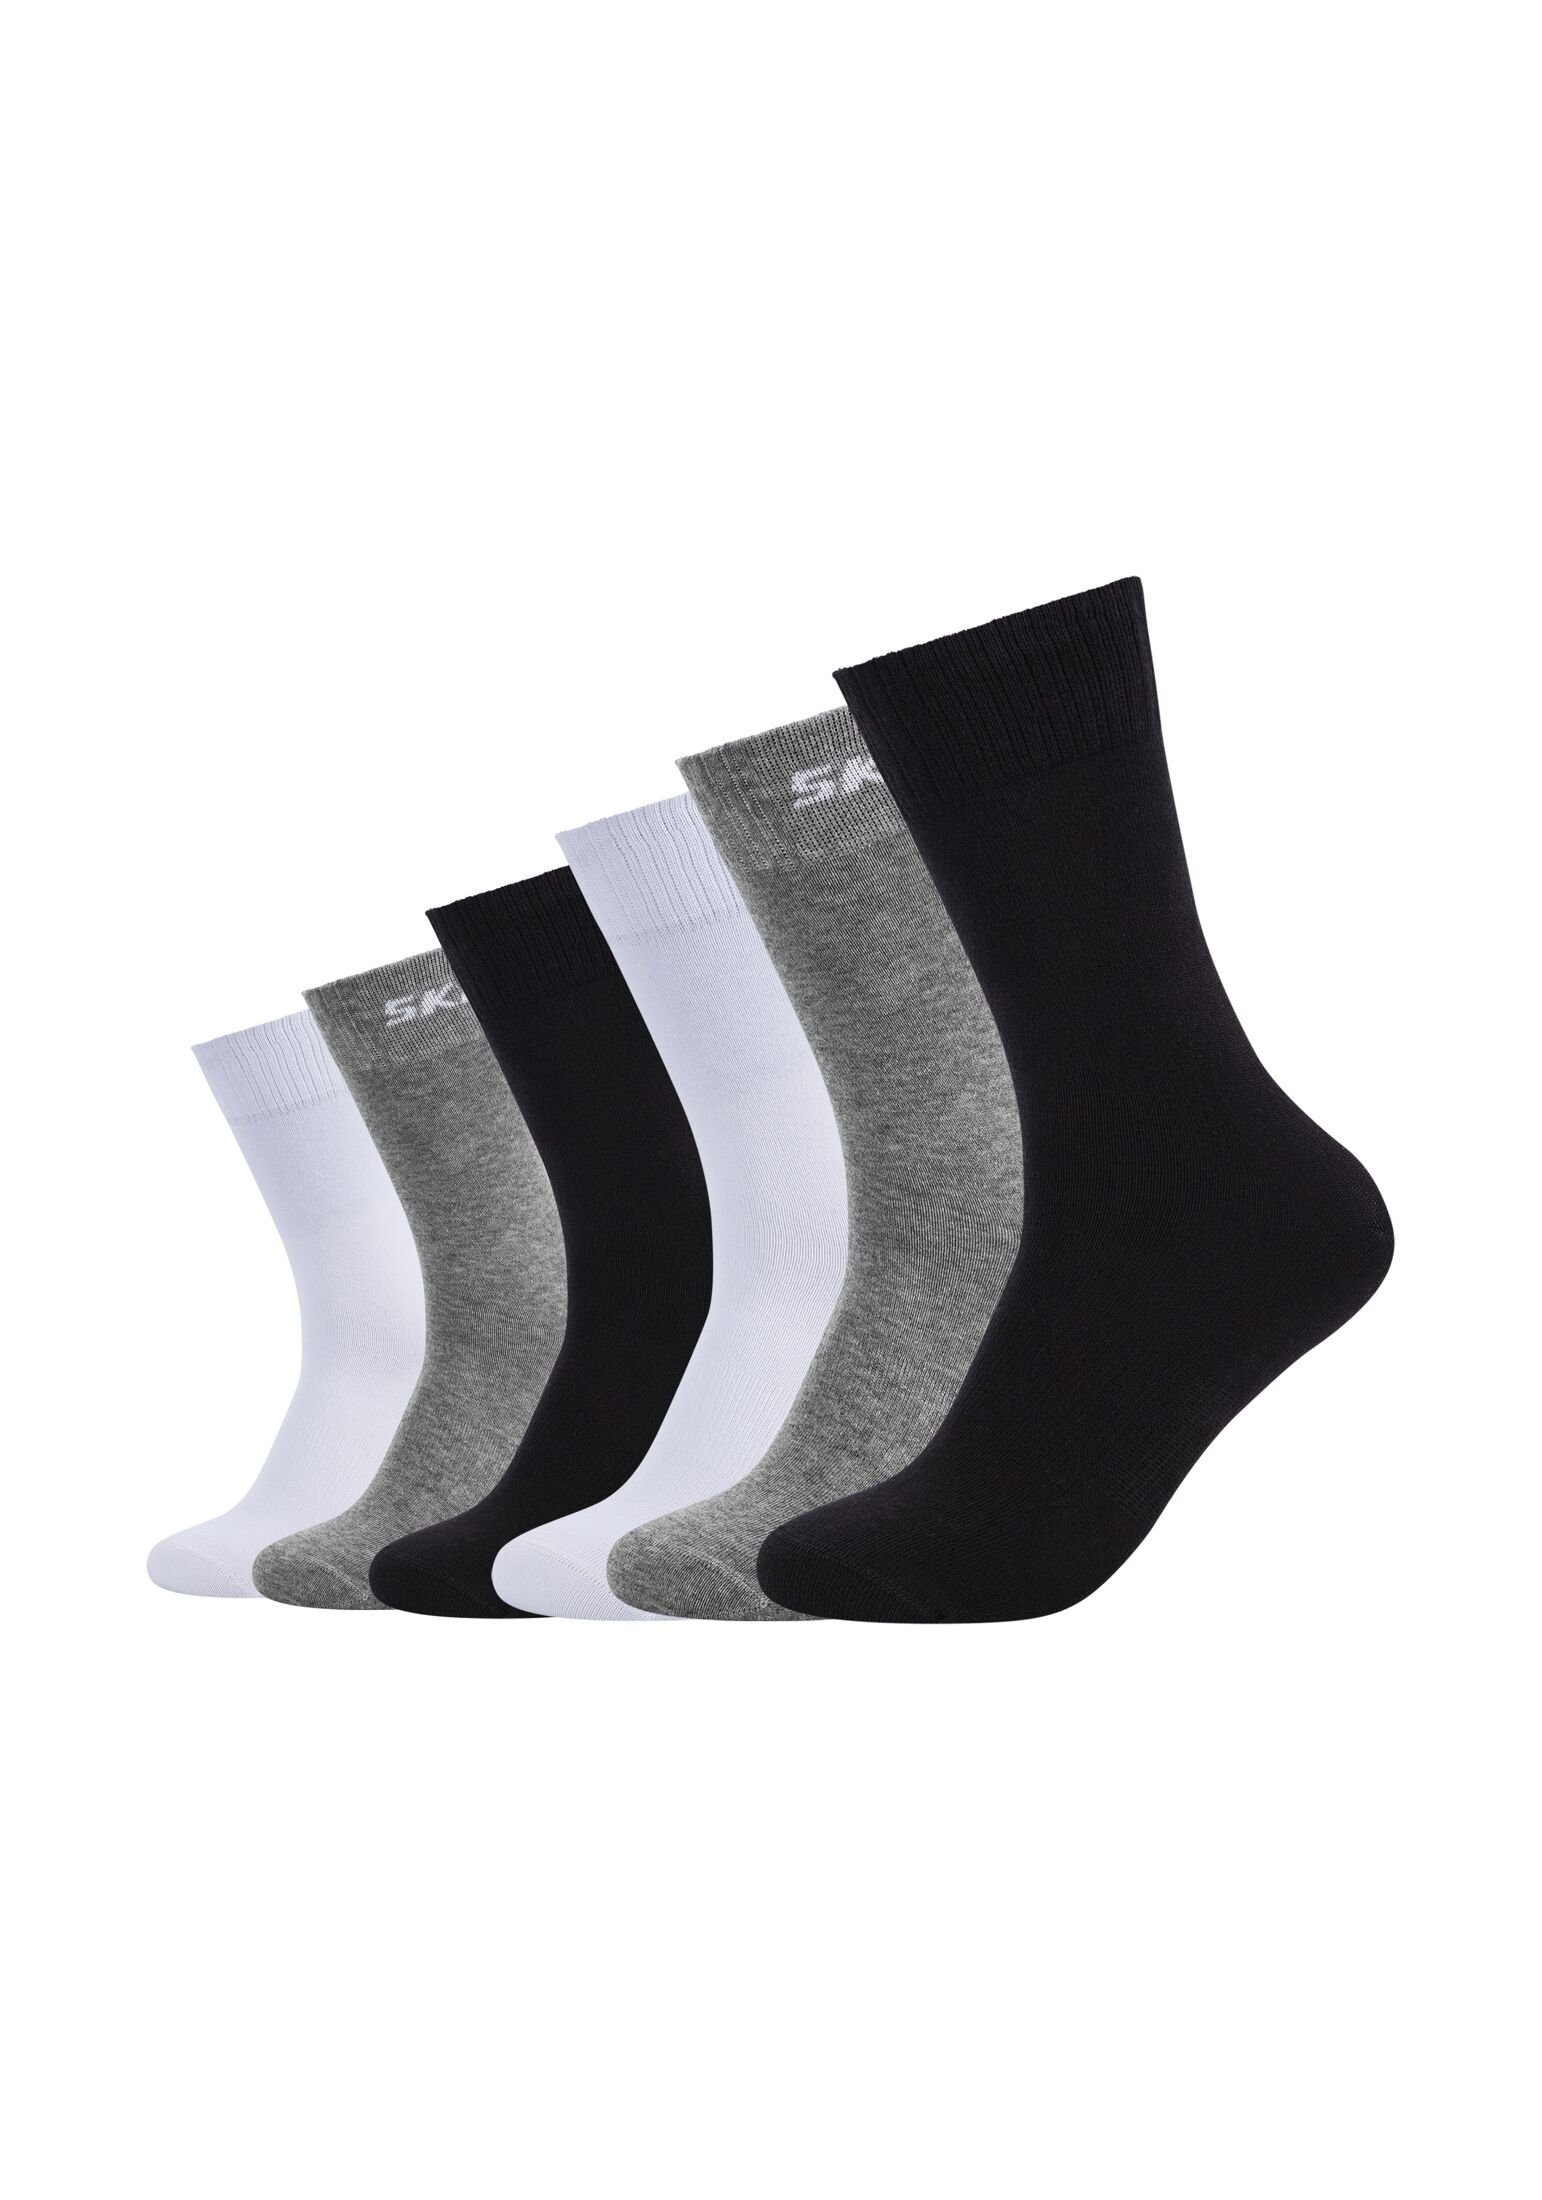 6er Socken mix Socken black/grey Pack Skechers